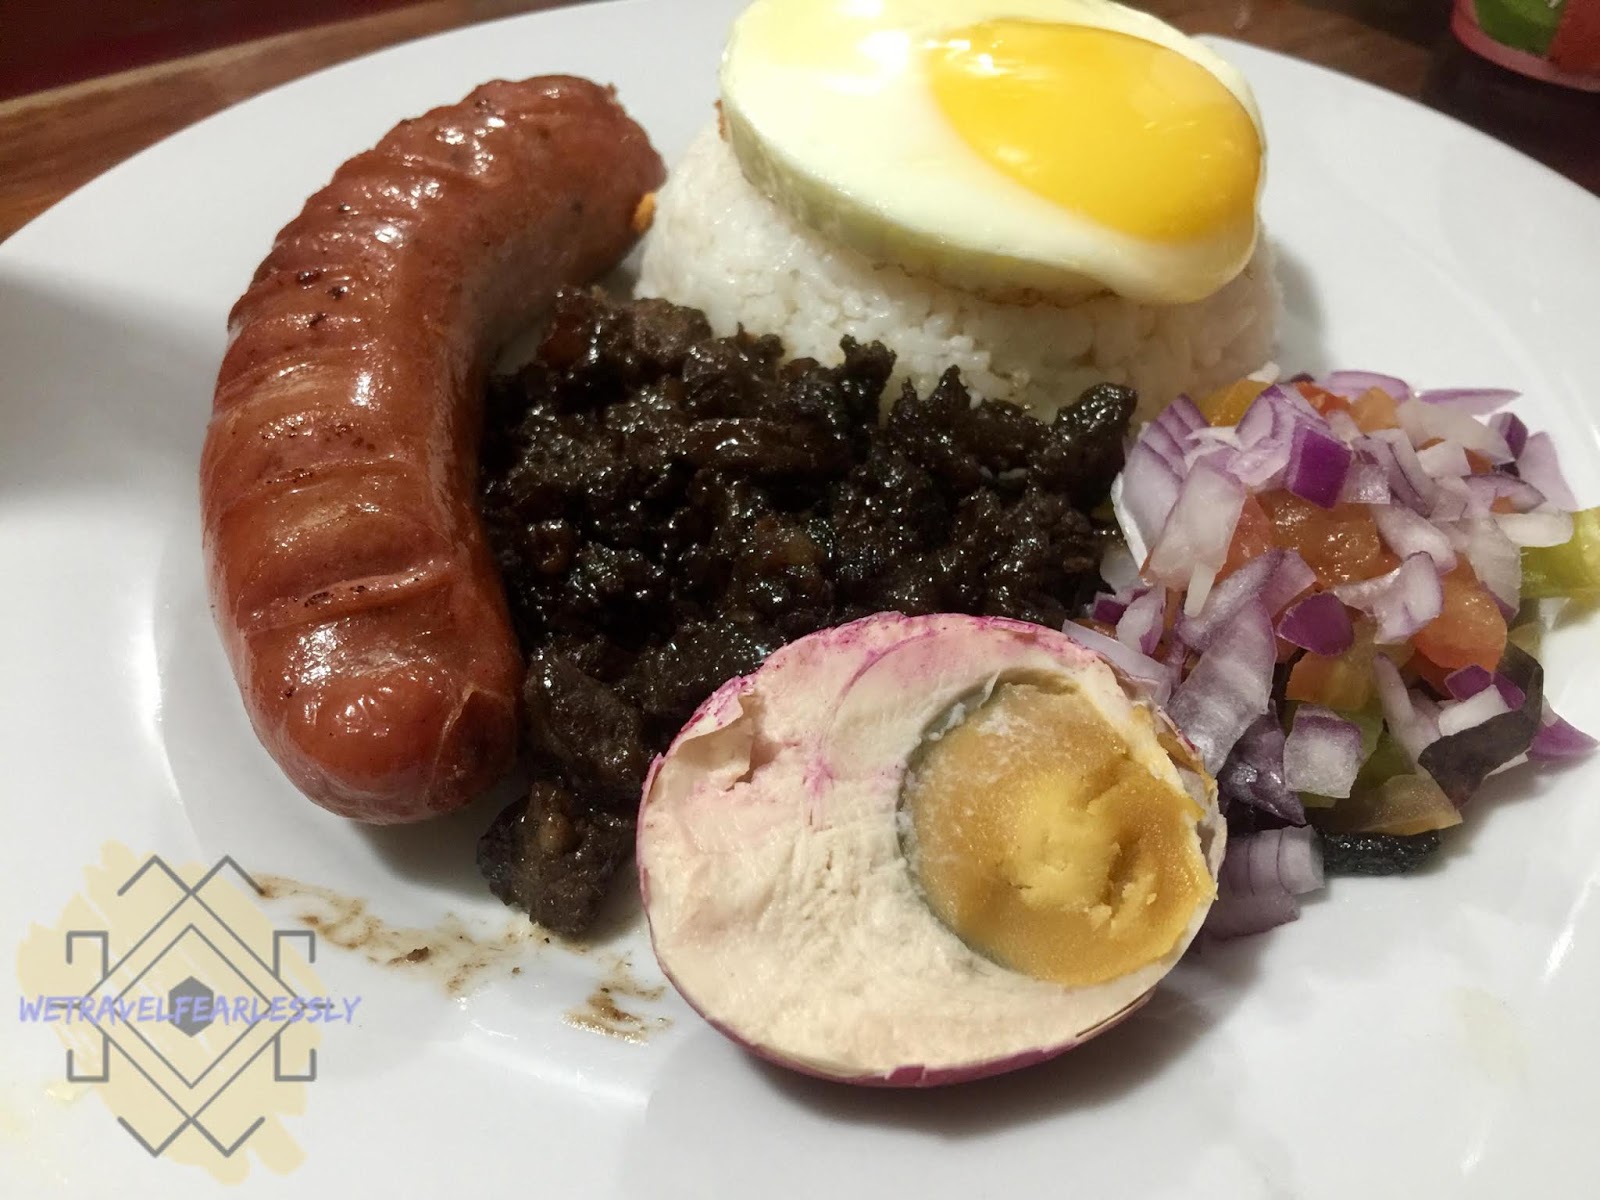 Tuki's Big Meal - Hungarian Sausage in Tuki's Food Station in Manggahan, Pasig